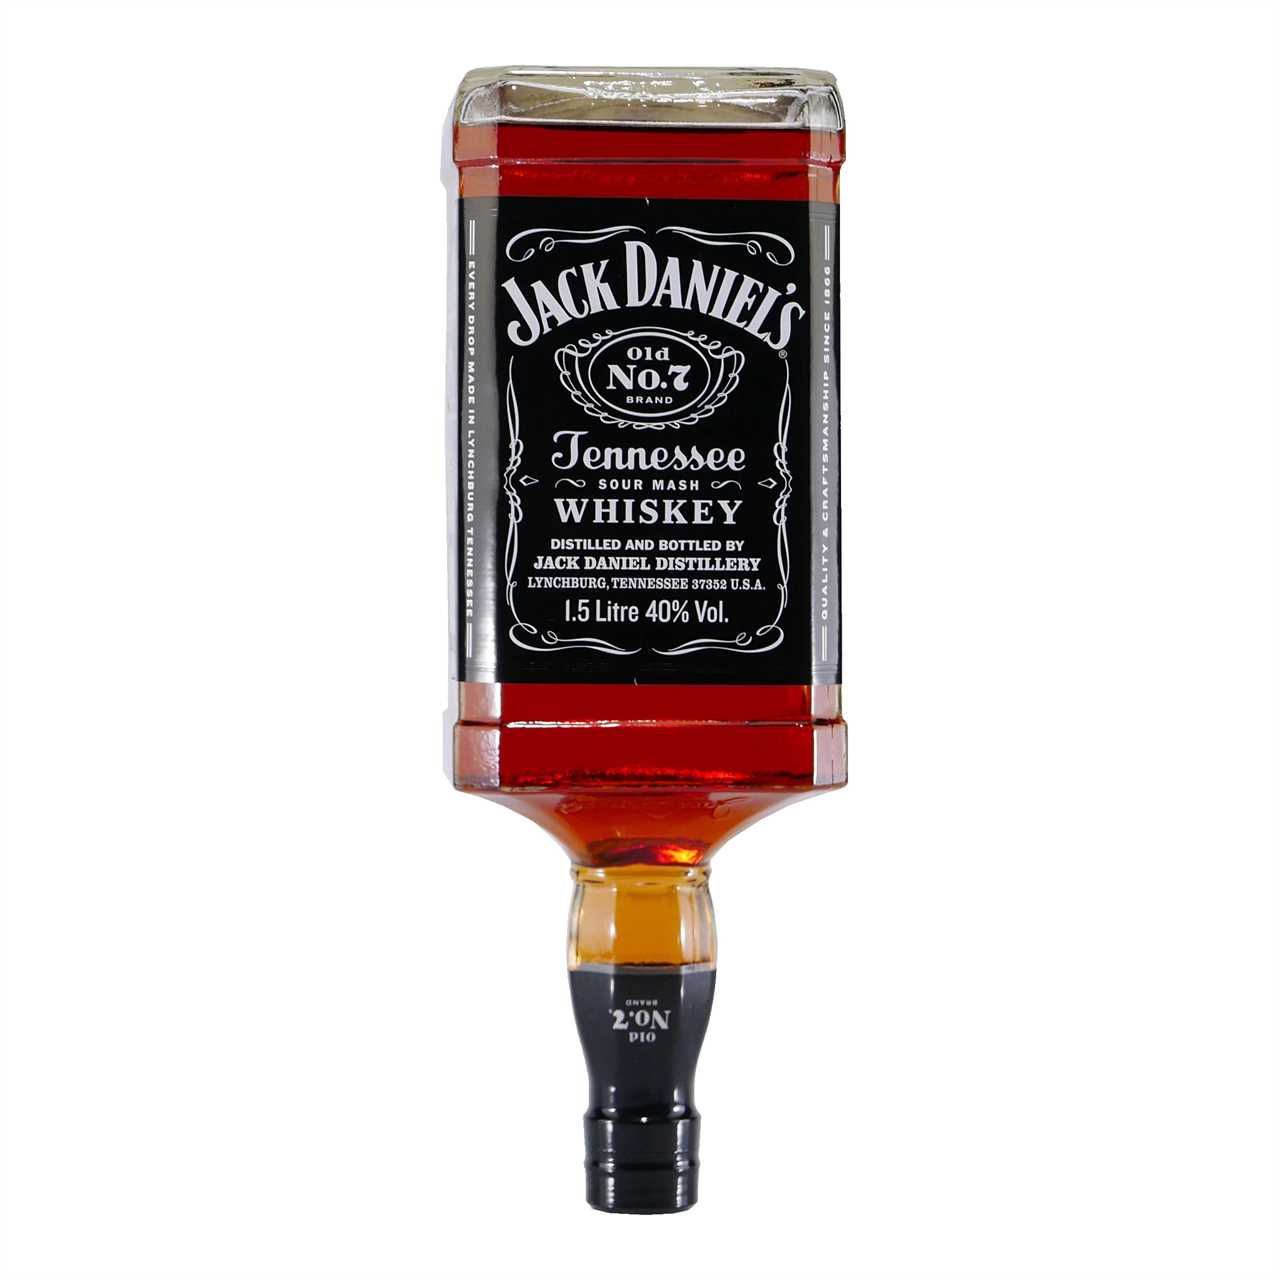 Jack Daniels Old No.7 Sour Mash Whiskey 1,5L Magnumflasche